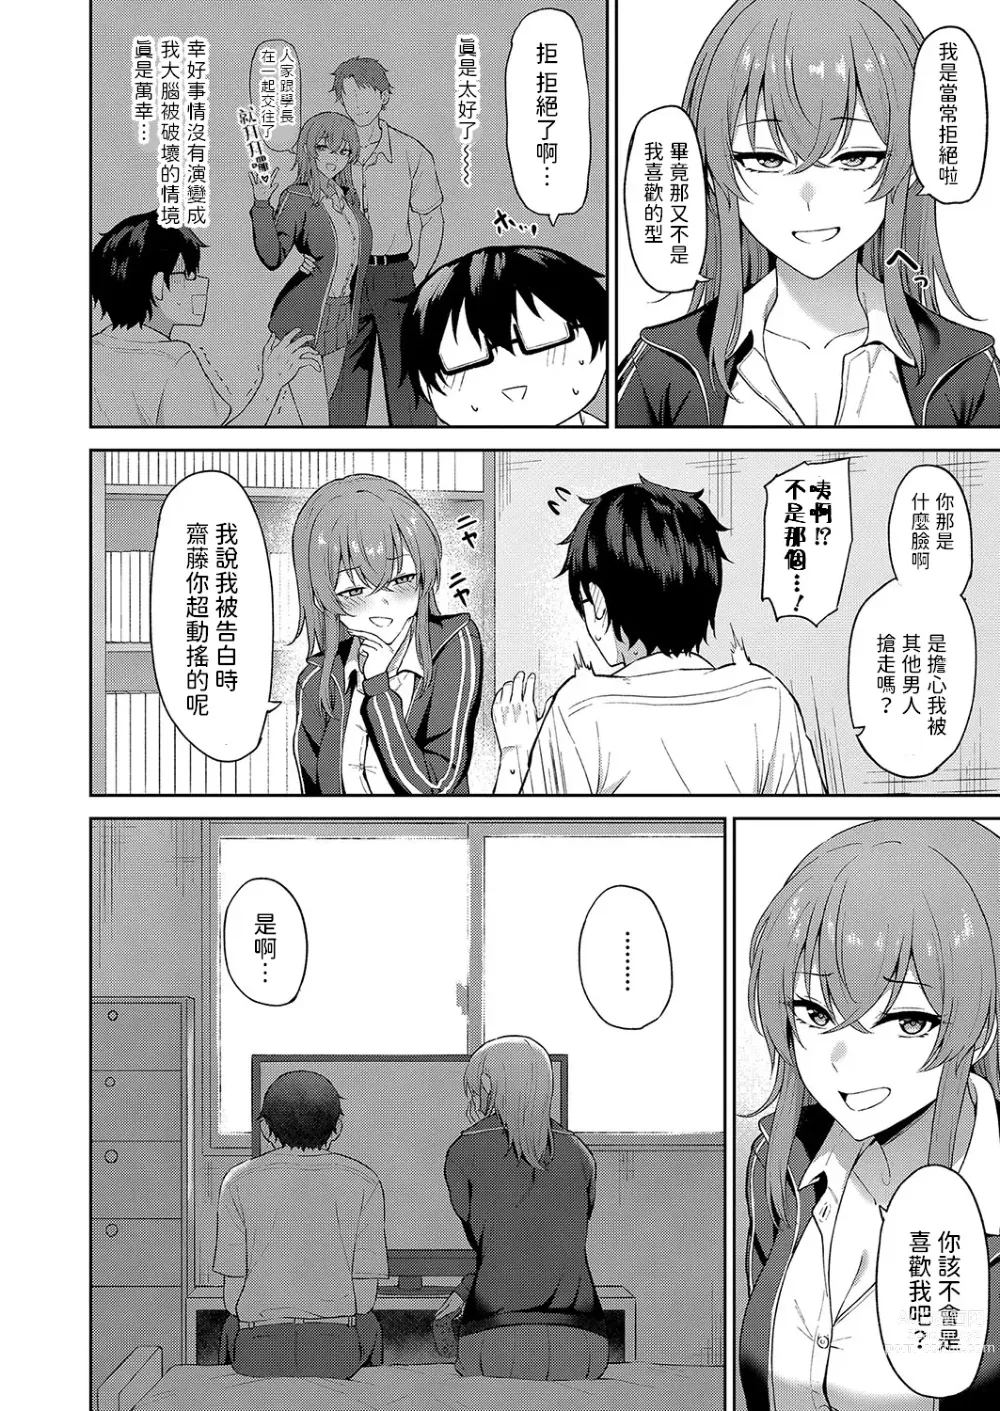 Page 4 of manga Kokuhaku wa Toutotsu ni